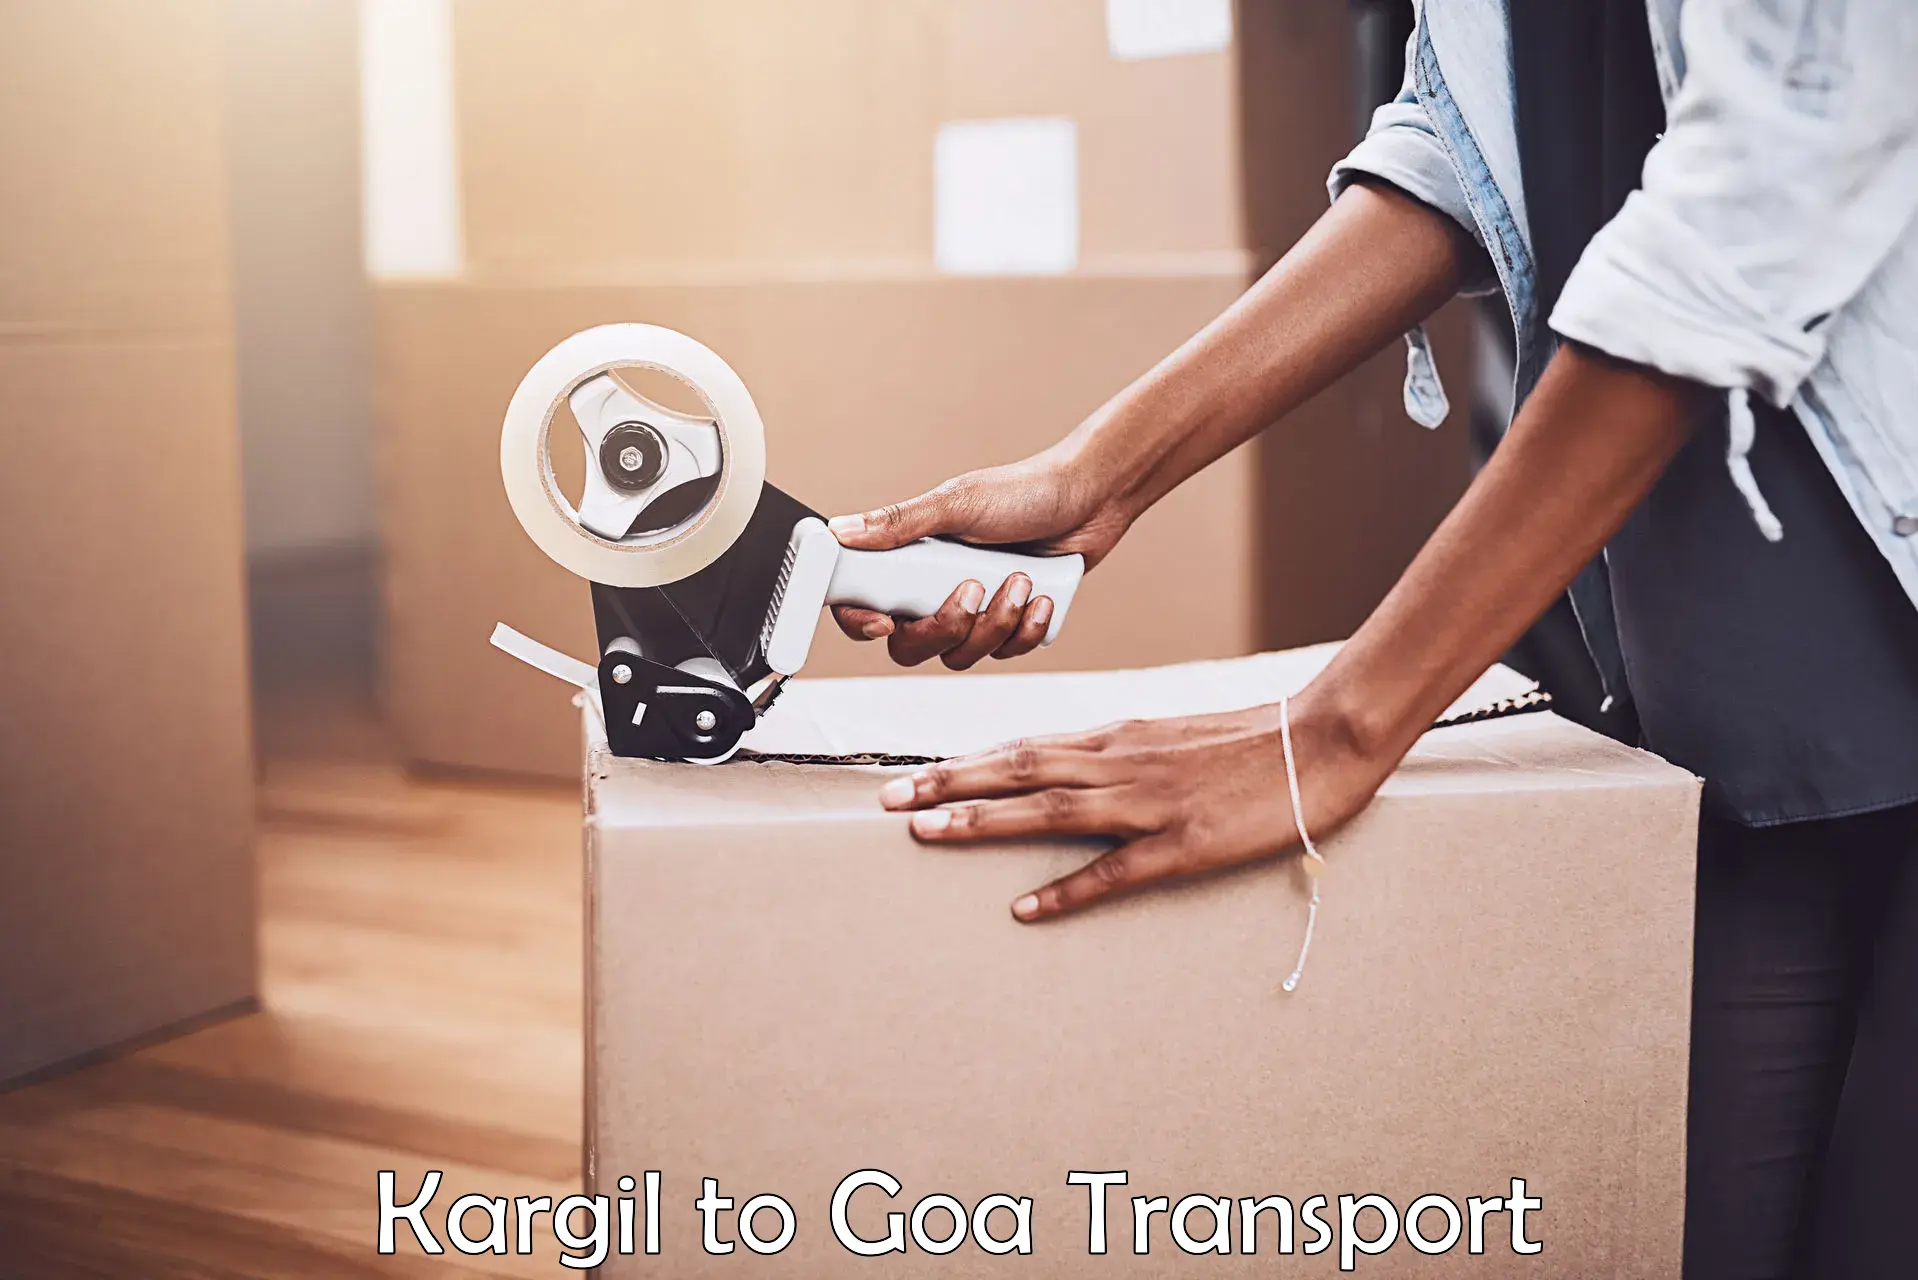 Nationwide transport services Kargil to Ponda